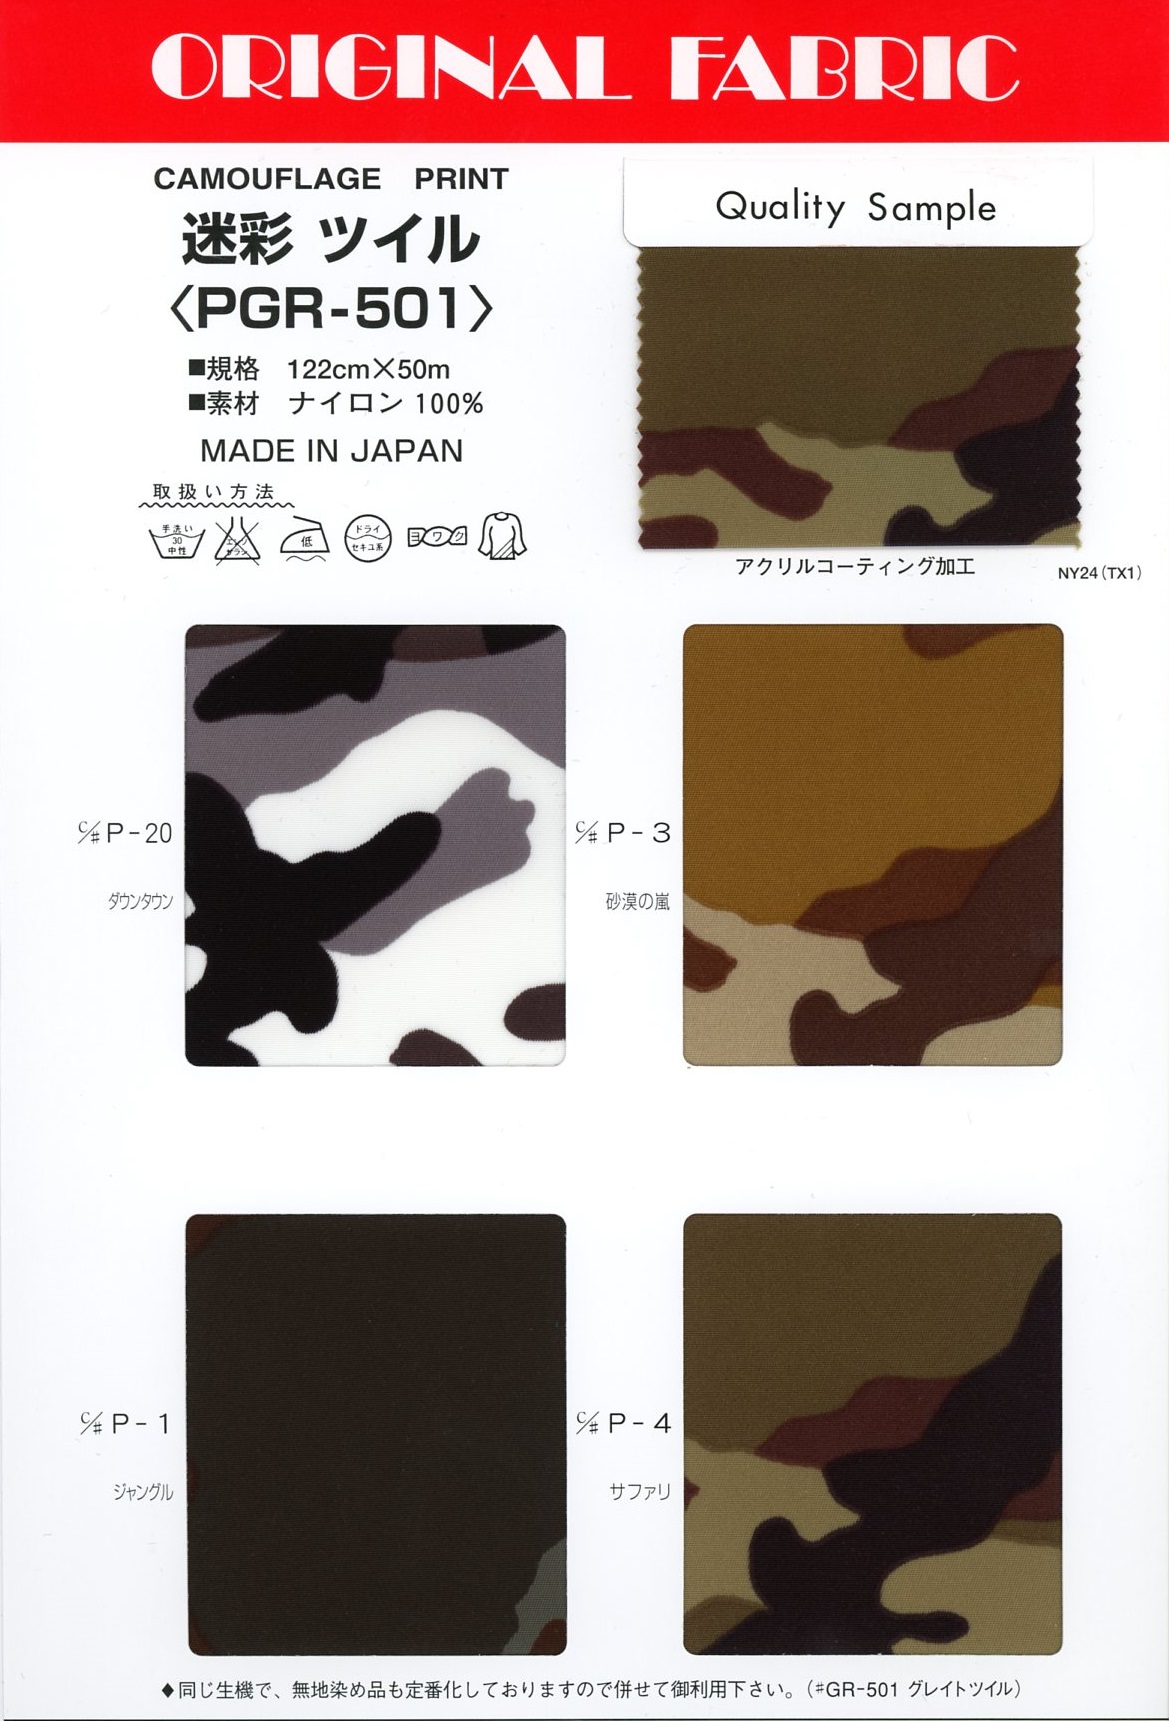 PGR-501 Sarga De Camuflaje[Fabrica Textil] Masuda